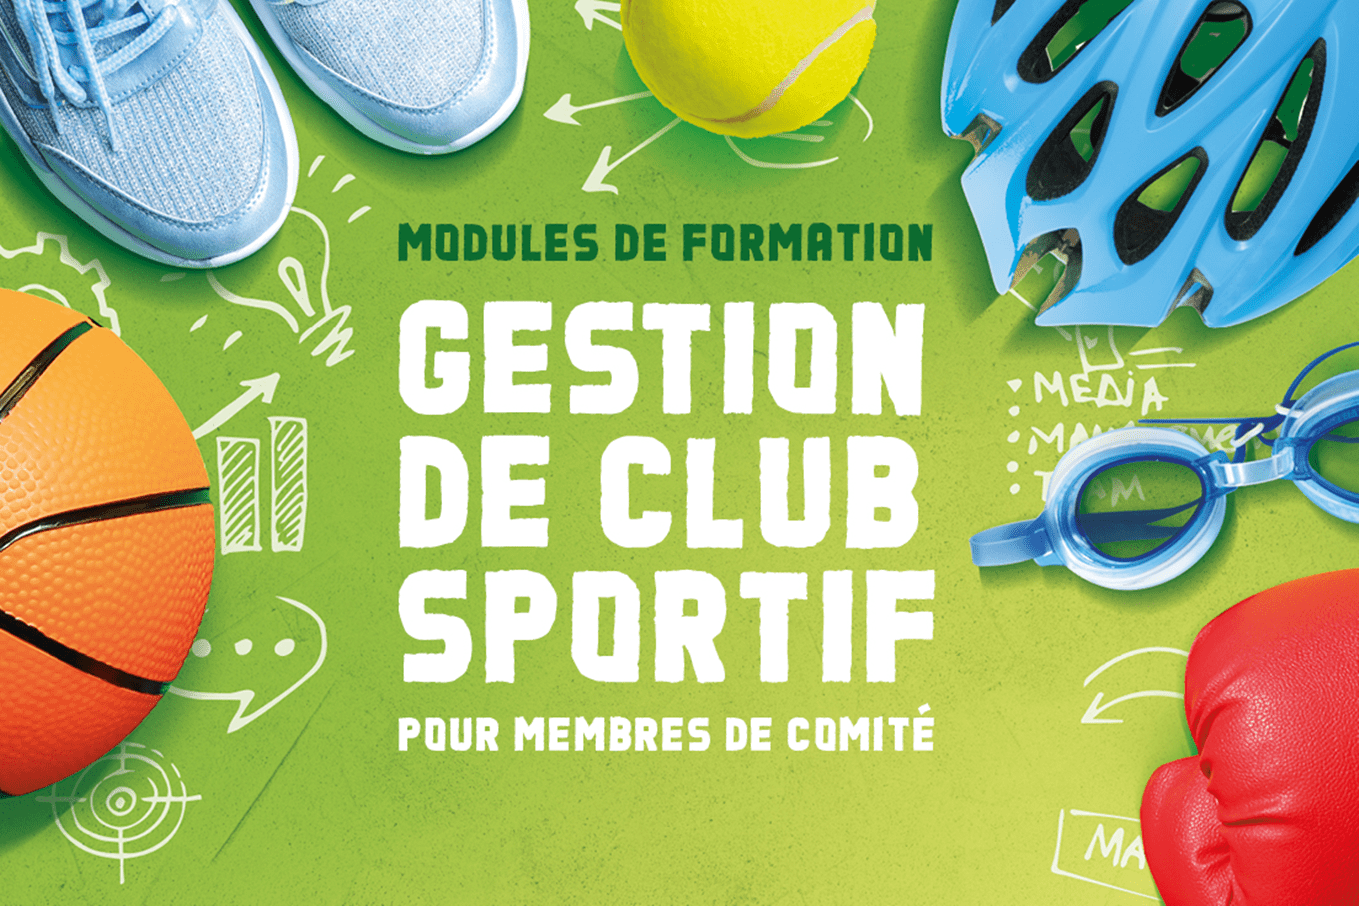 Modules_de_formation_en_gestion_de_clubs_sportifs_pour_les_membres_comite-min.png